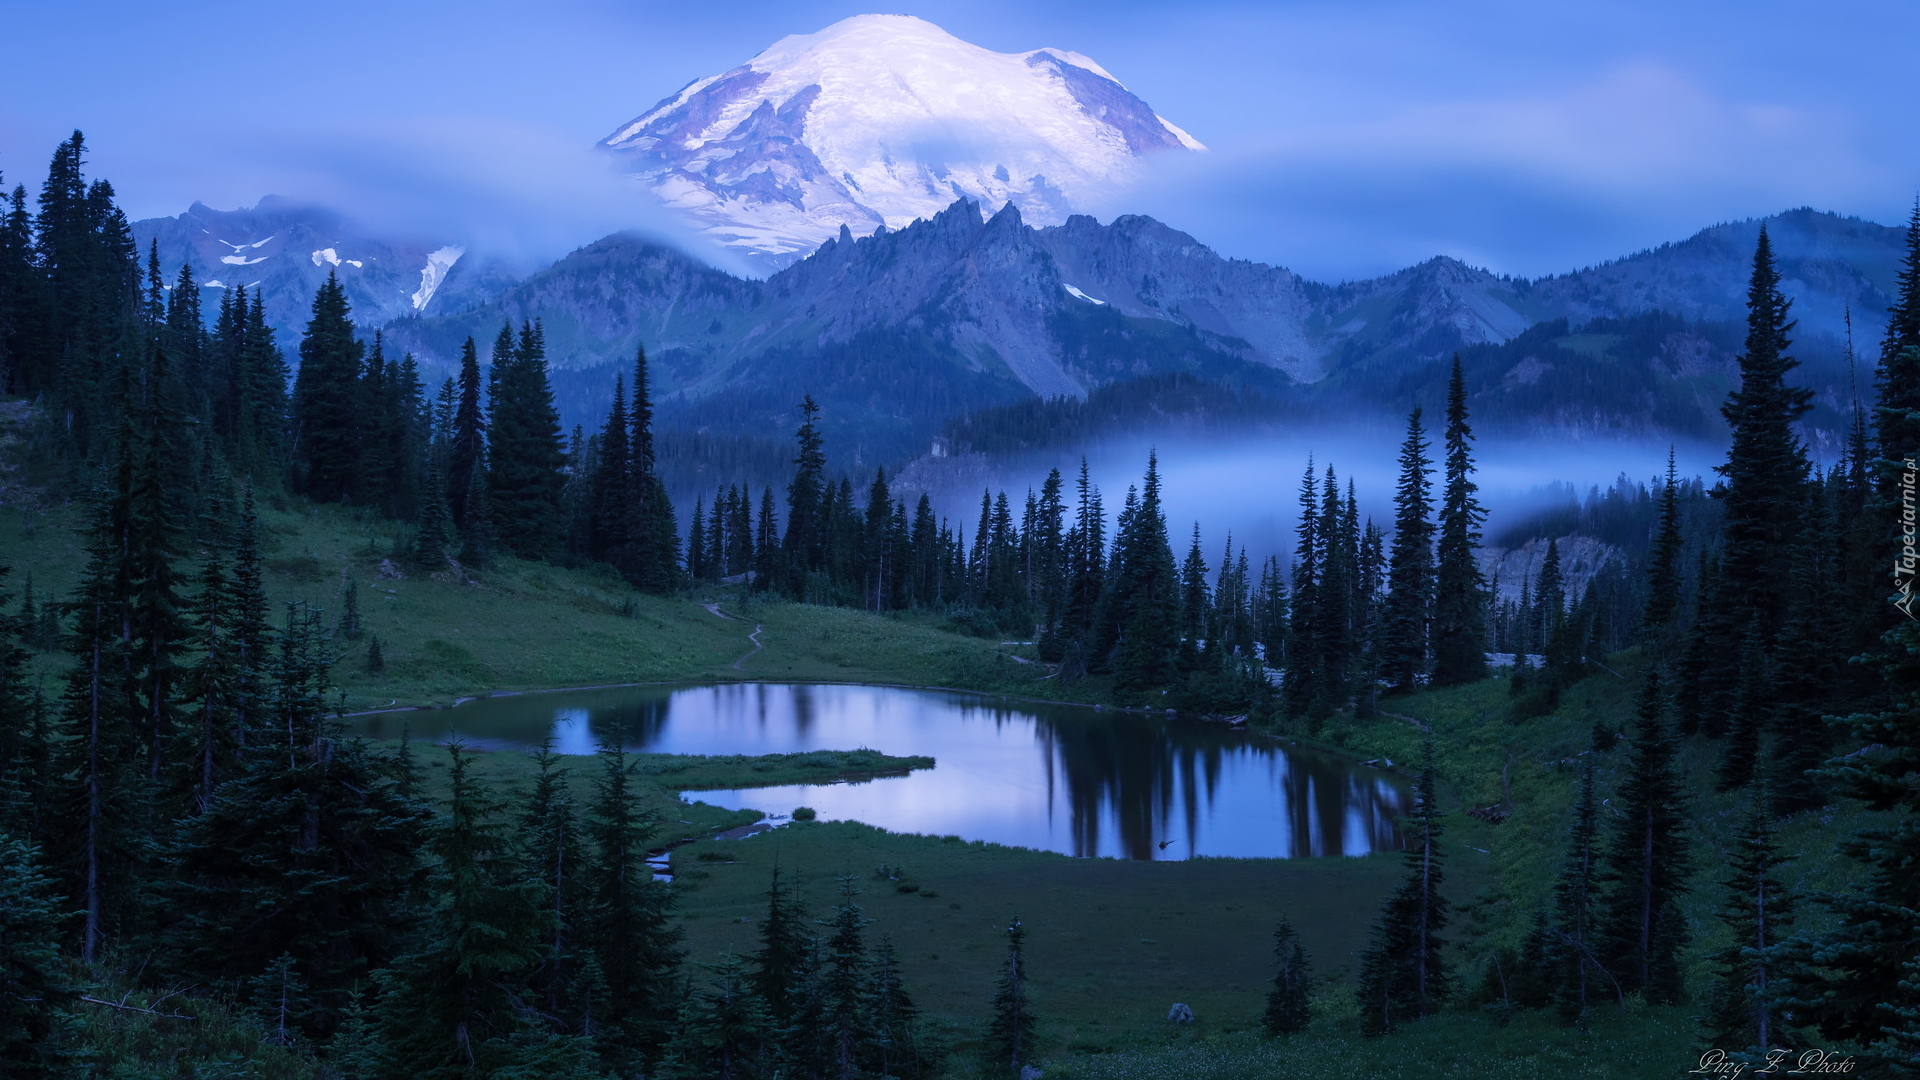 Park Narodowy Mount Rainier, Góry, Stratowulkan Mount Rainier, Drzewa, Jezioro Tipsoo, Mgła, Stan Waszyngton, Stany Zjednoczone